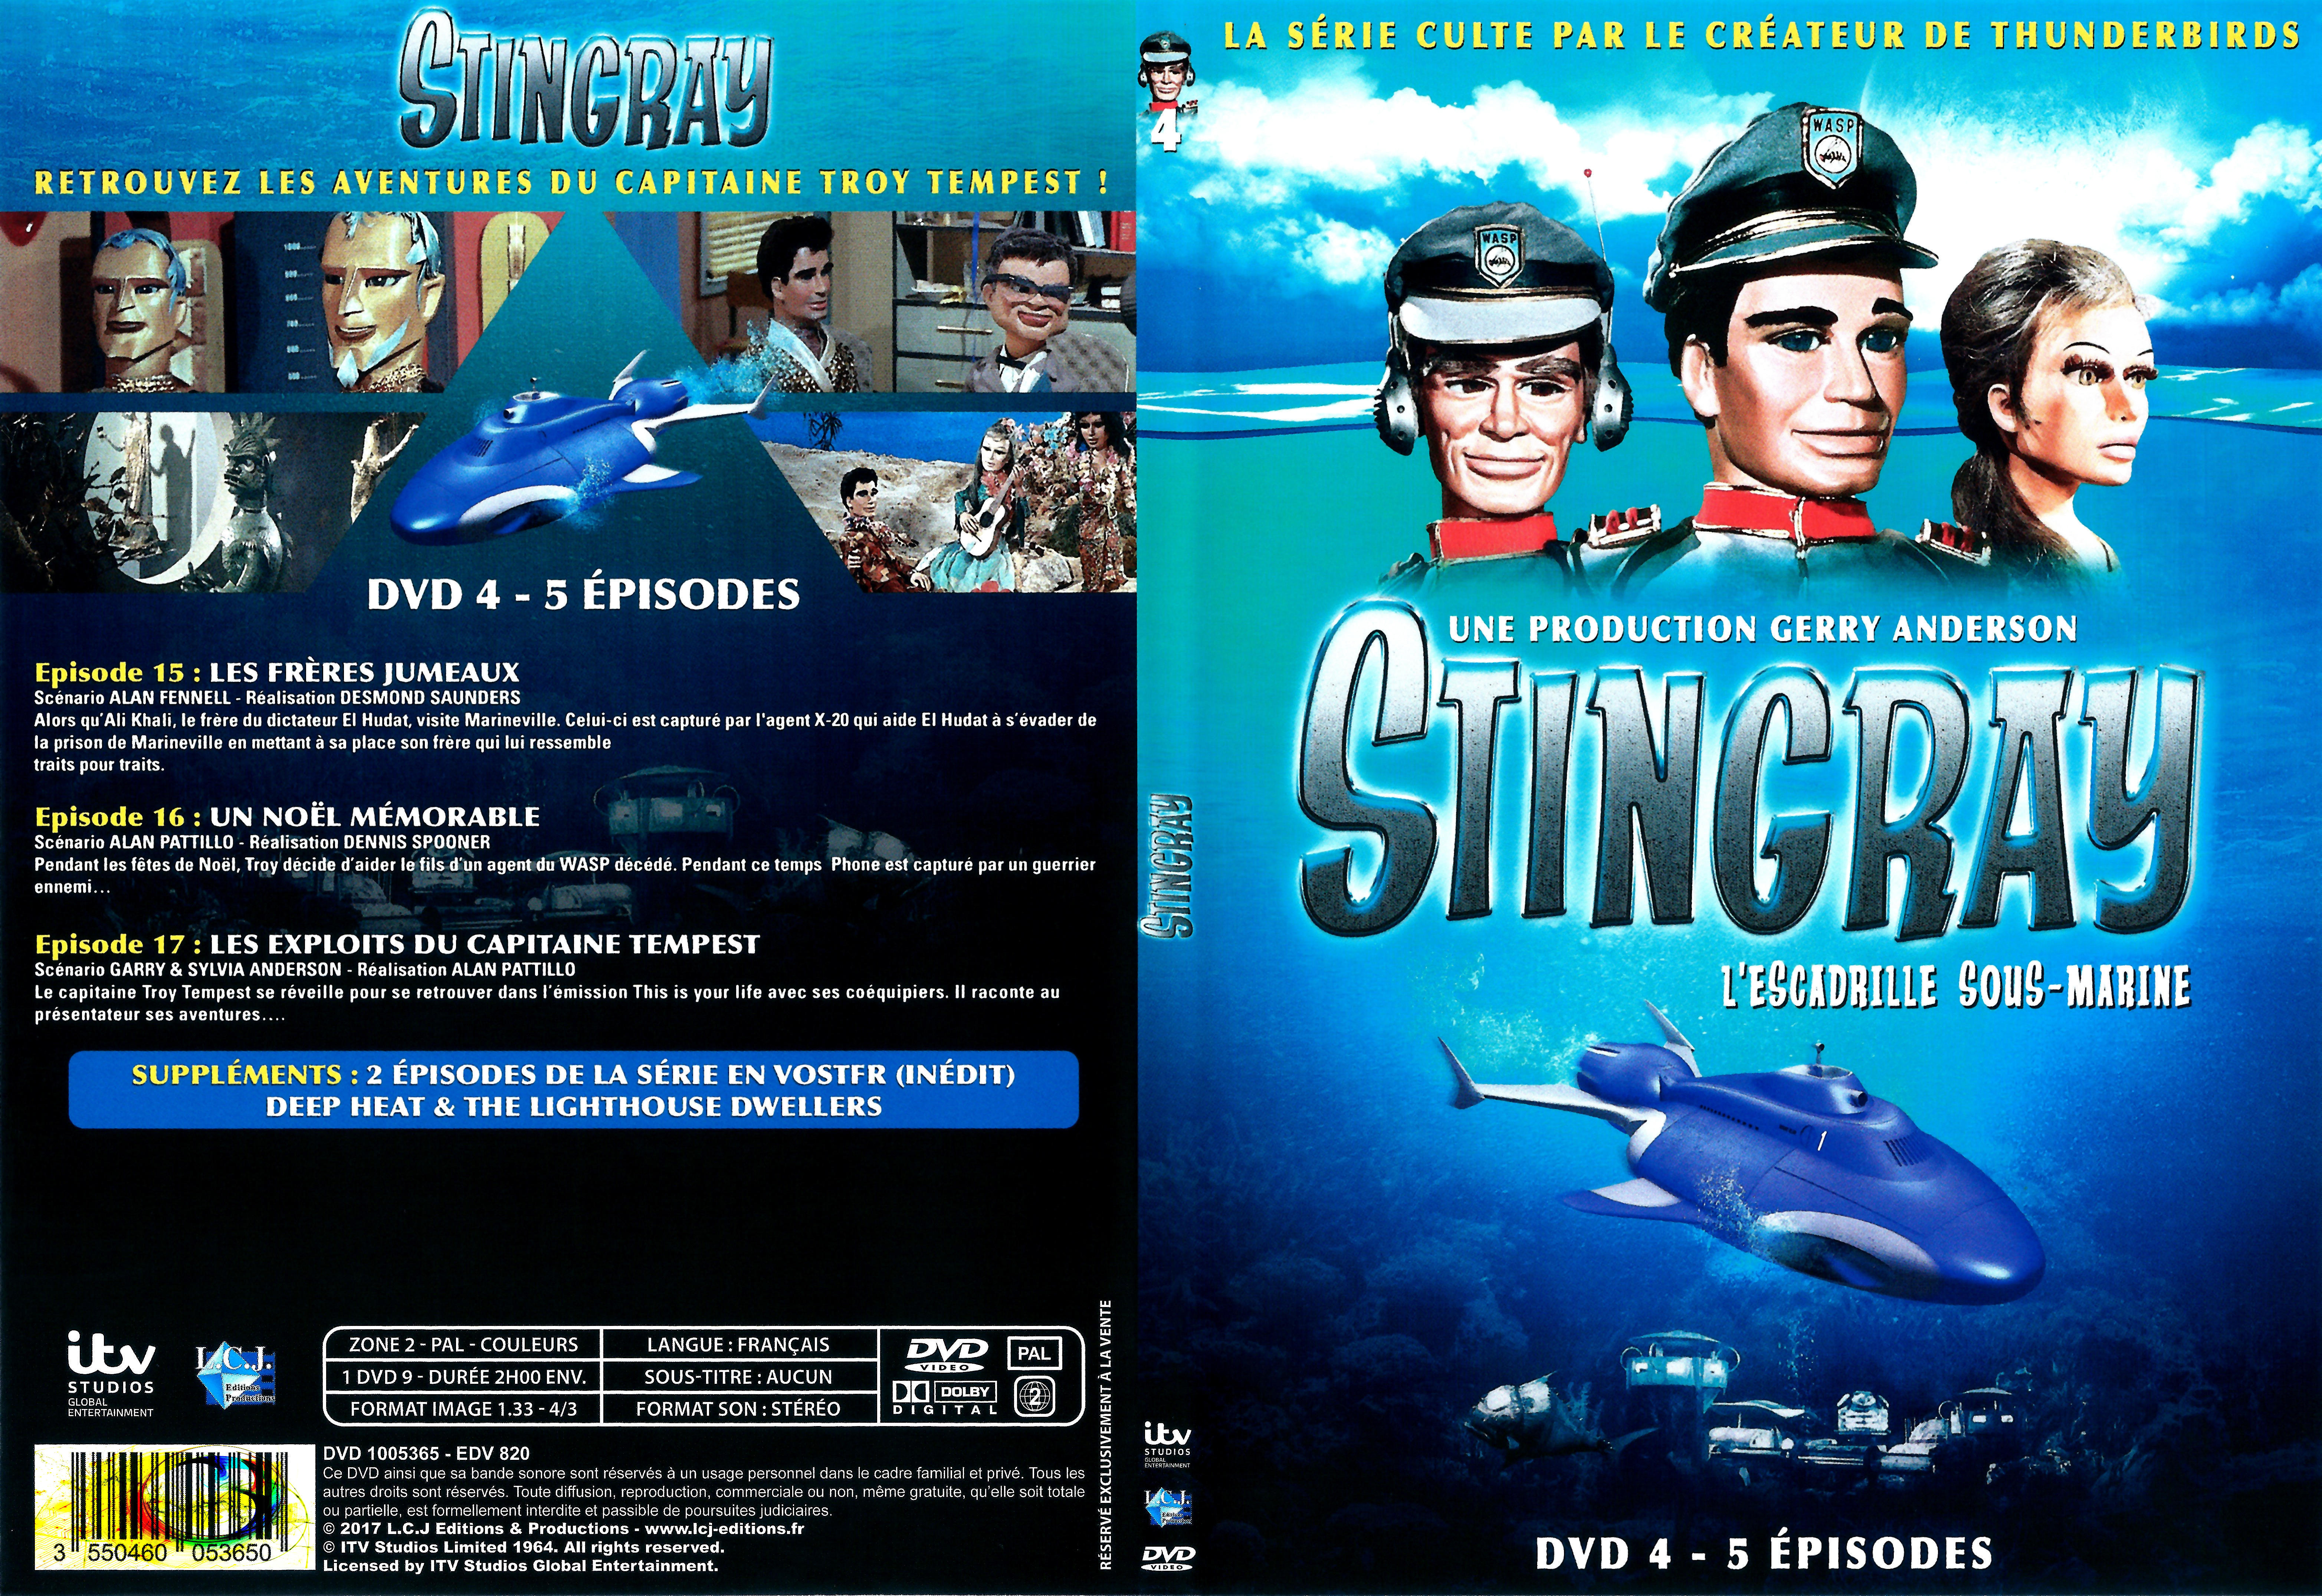 Jaquette DVD Stingray Saison 2 DVD 4